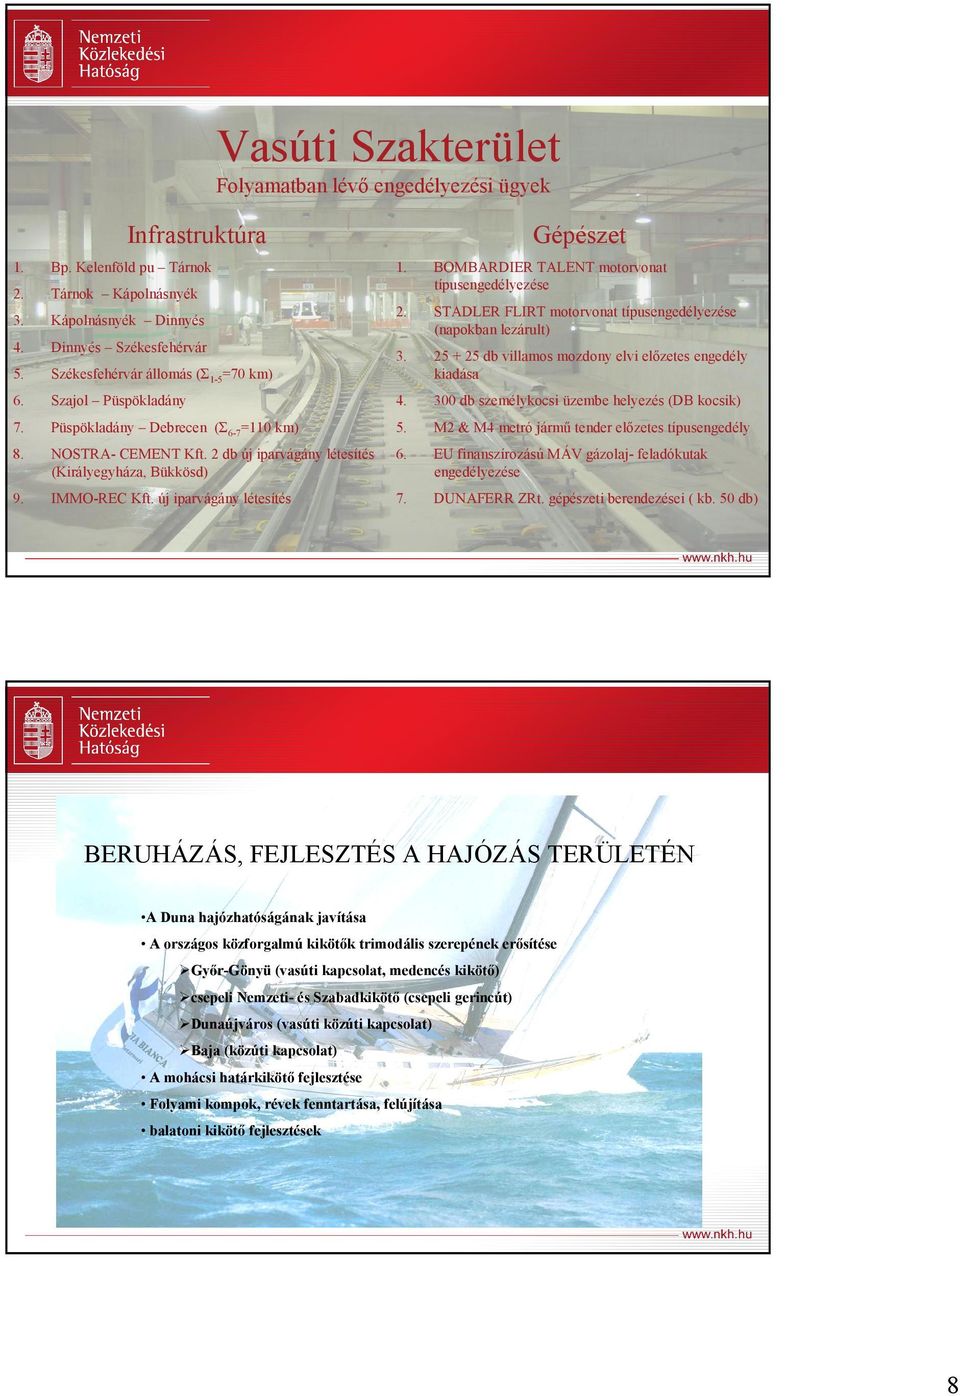 25 + 25 db villamos mozdony elvi elızetes engedély kiadása Szajol Püspökladány 4. 300 db személykocsi üzembe helyezés (DB kocsik) 7. Püspökladány Debrecen (Σ6-7=110 km) 5.